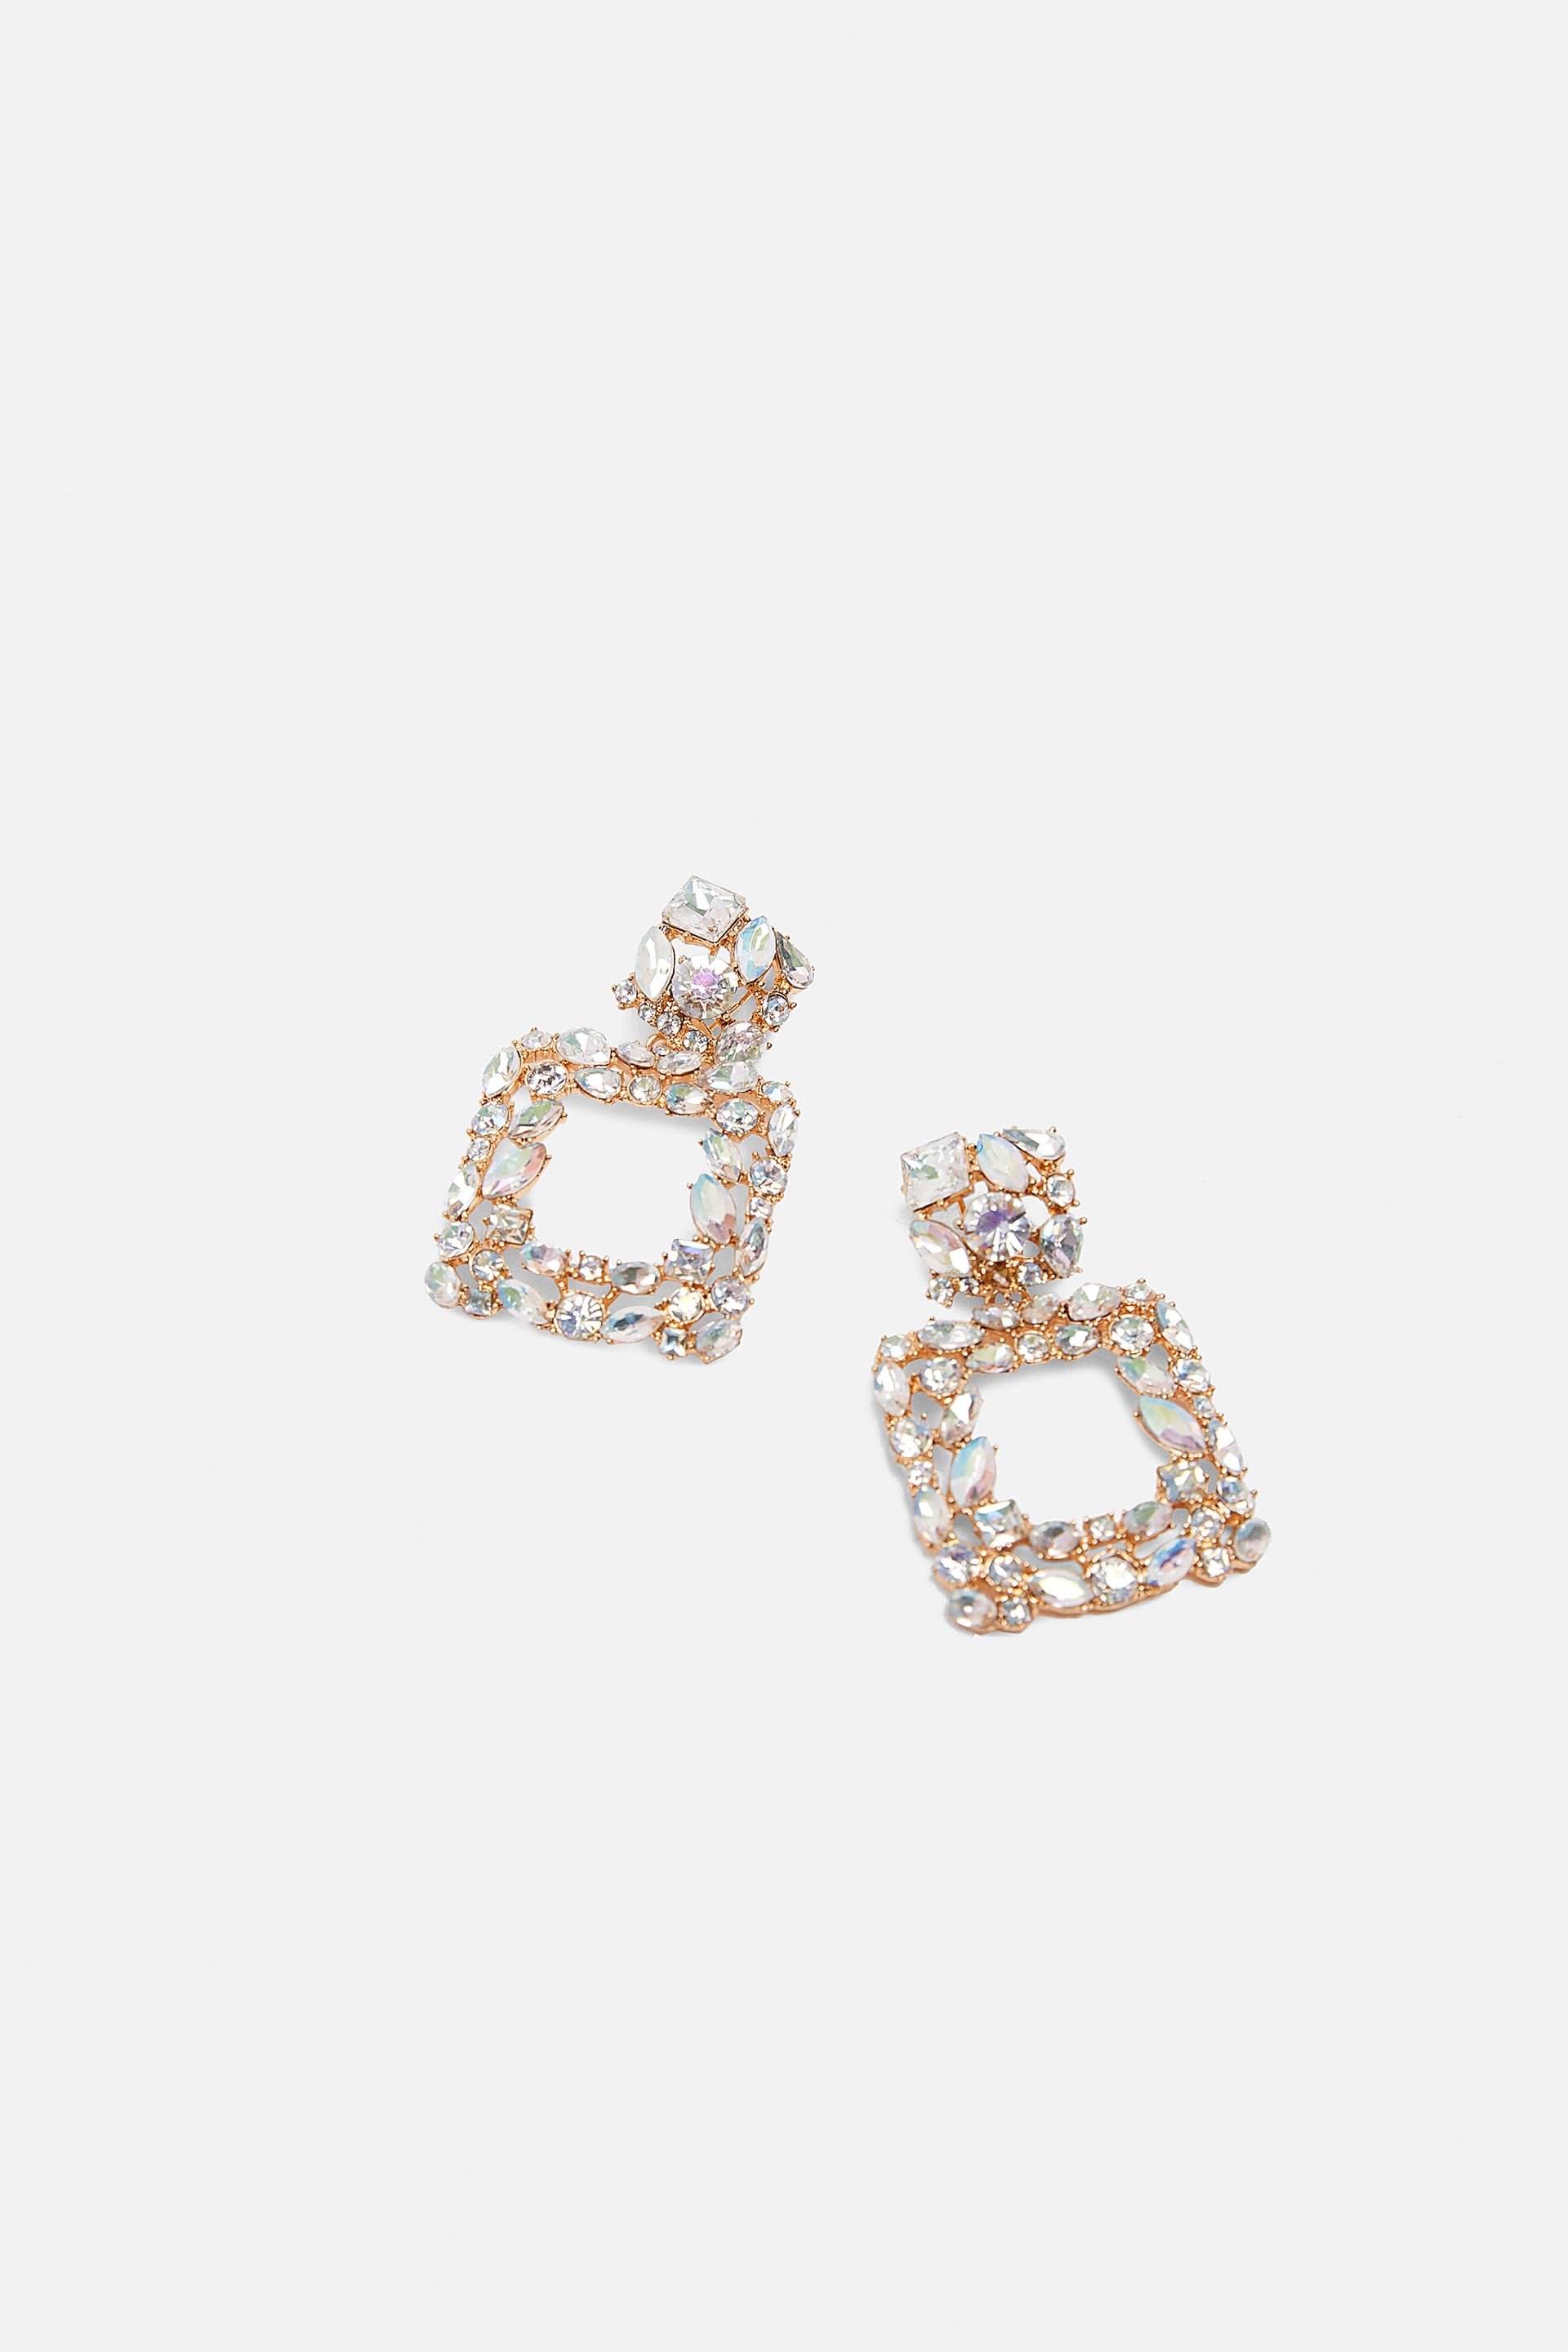 Zara Jewel Earrings | Jewellery Trends 